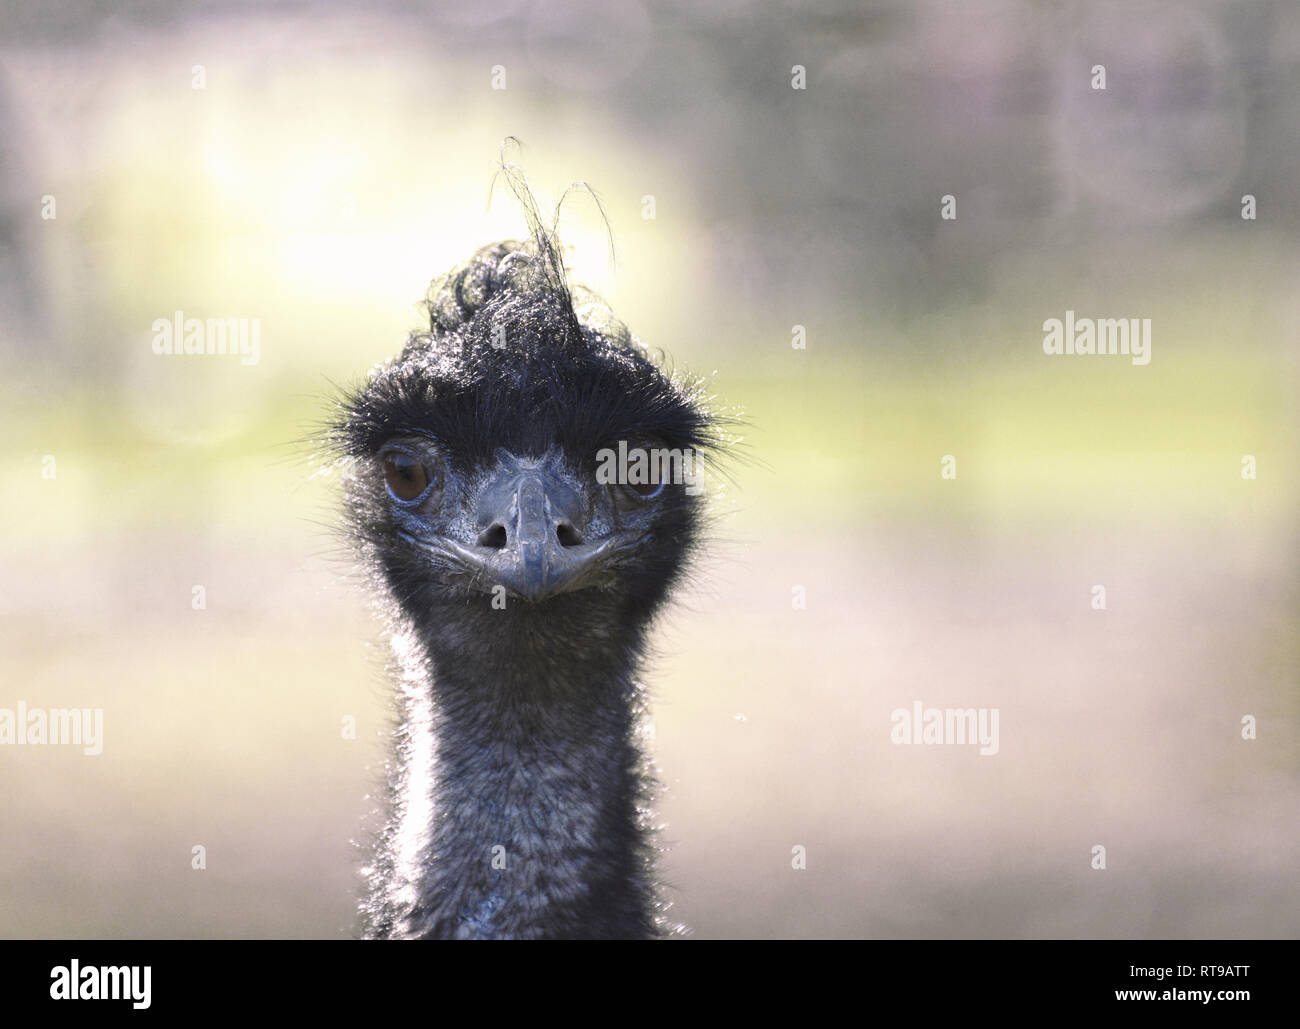 Emu Portrait (Nahaufnahme Kopf und Gesicht mit direktem Augenkontakt) Stockfoto